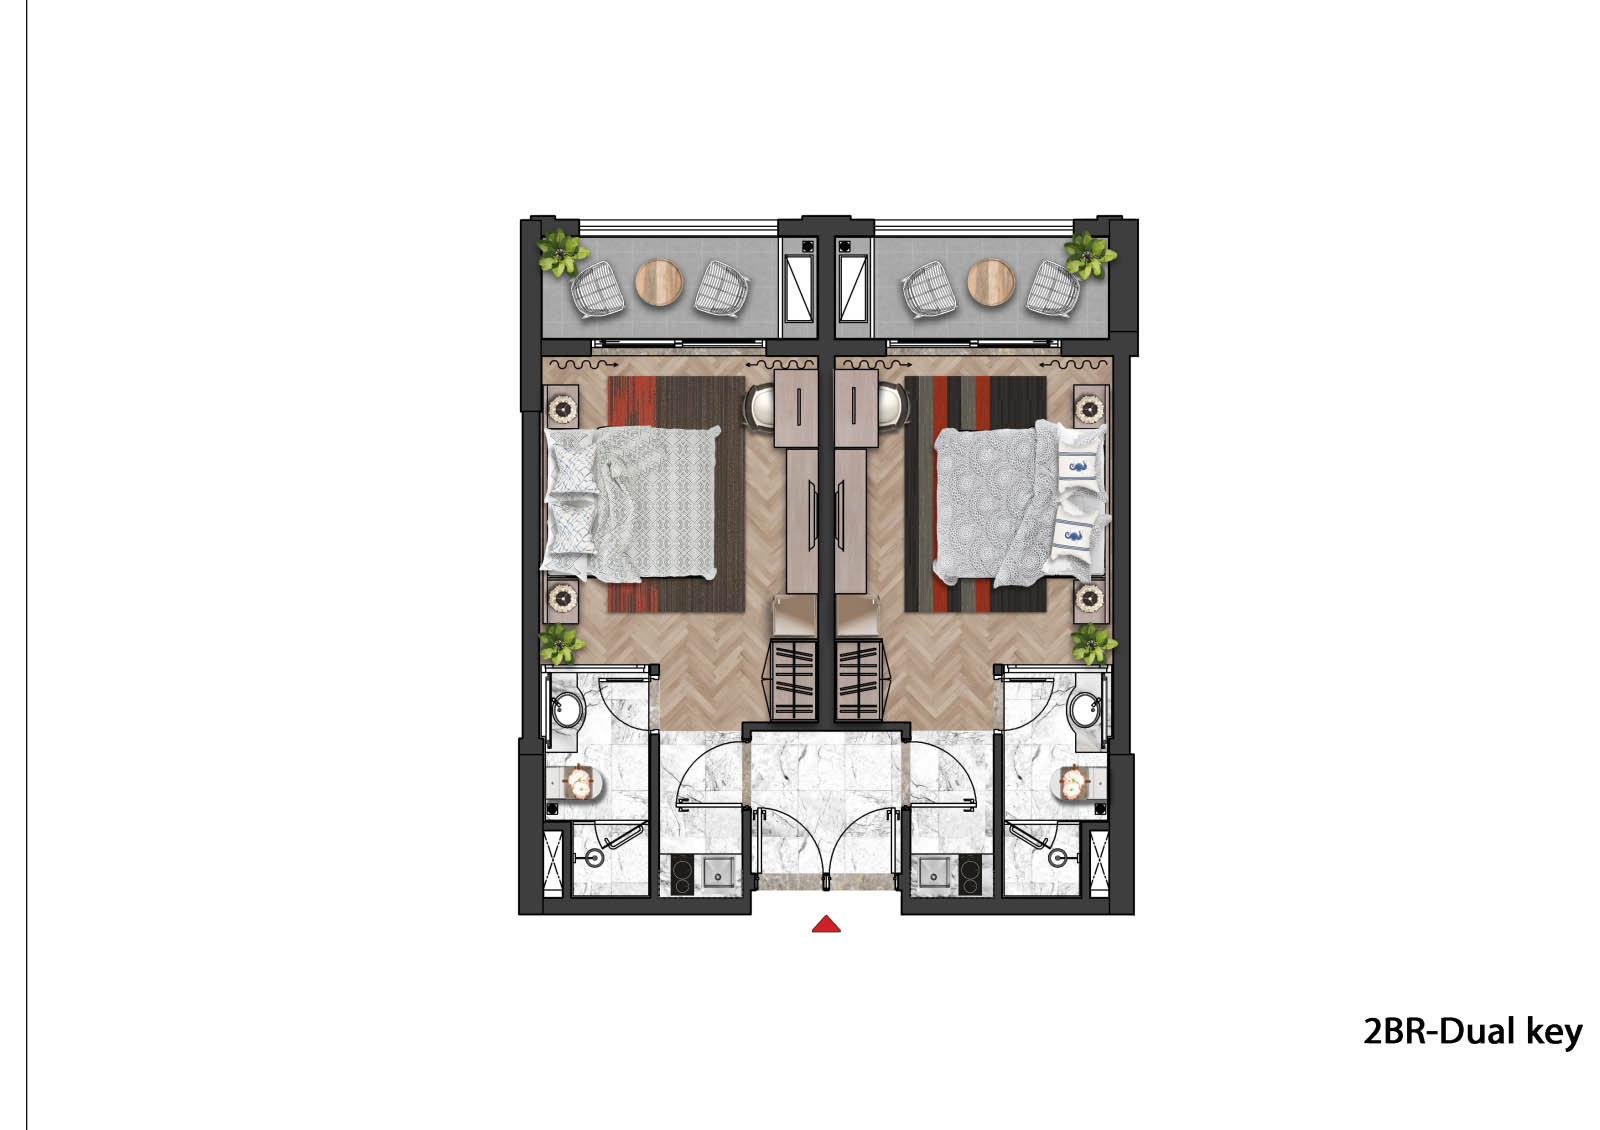 Mô hình căn hộ Dual - key hiện đại tiện nghi của SGC New An Thới